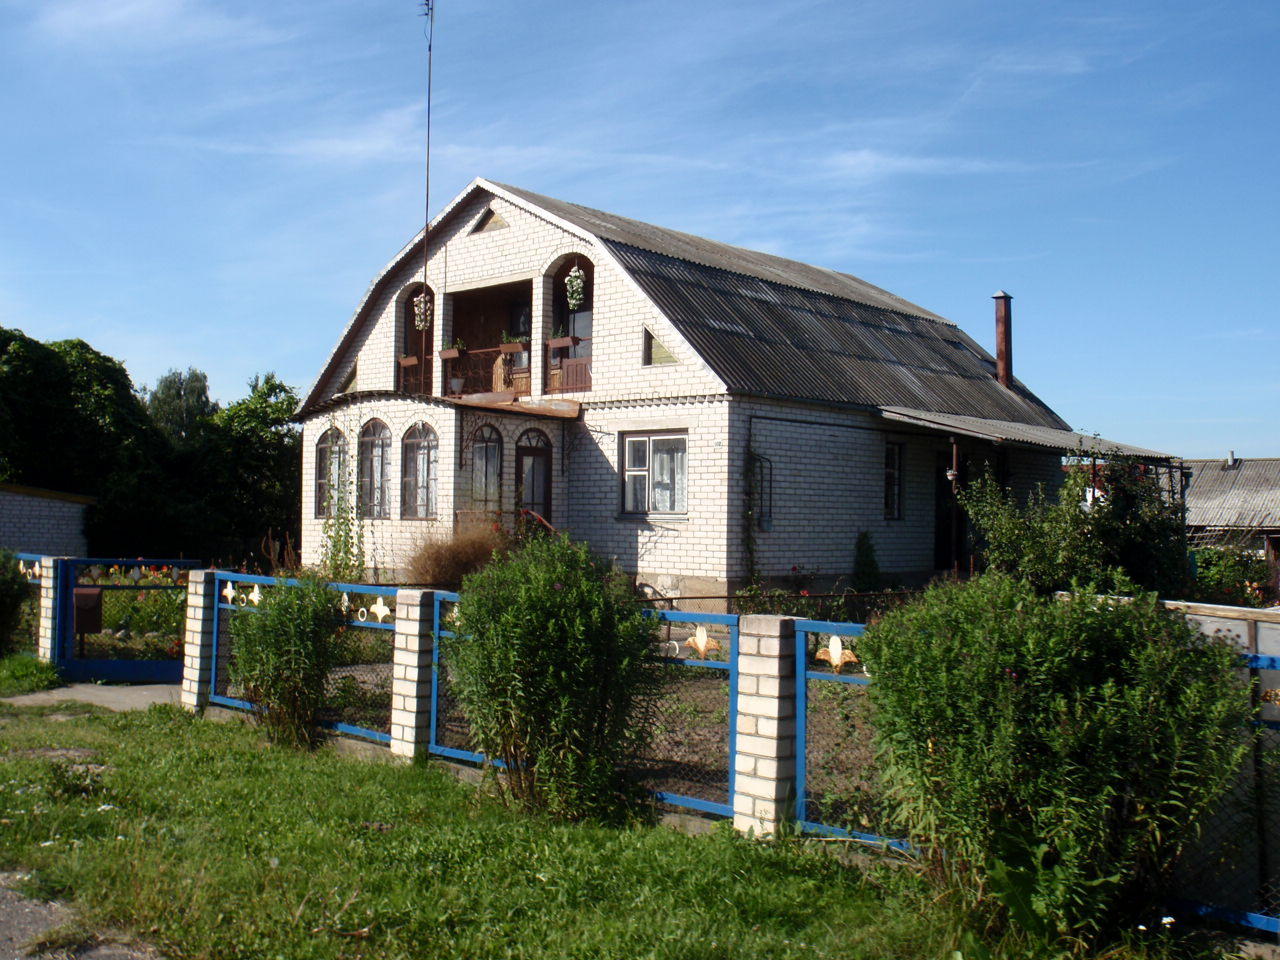 My Home at 102 Leninskaya (new name after war)